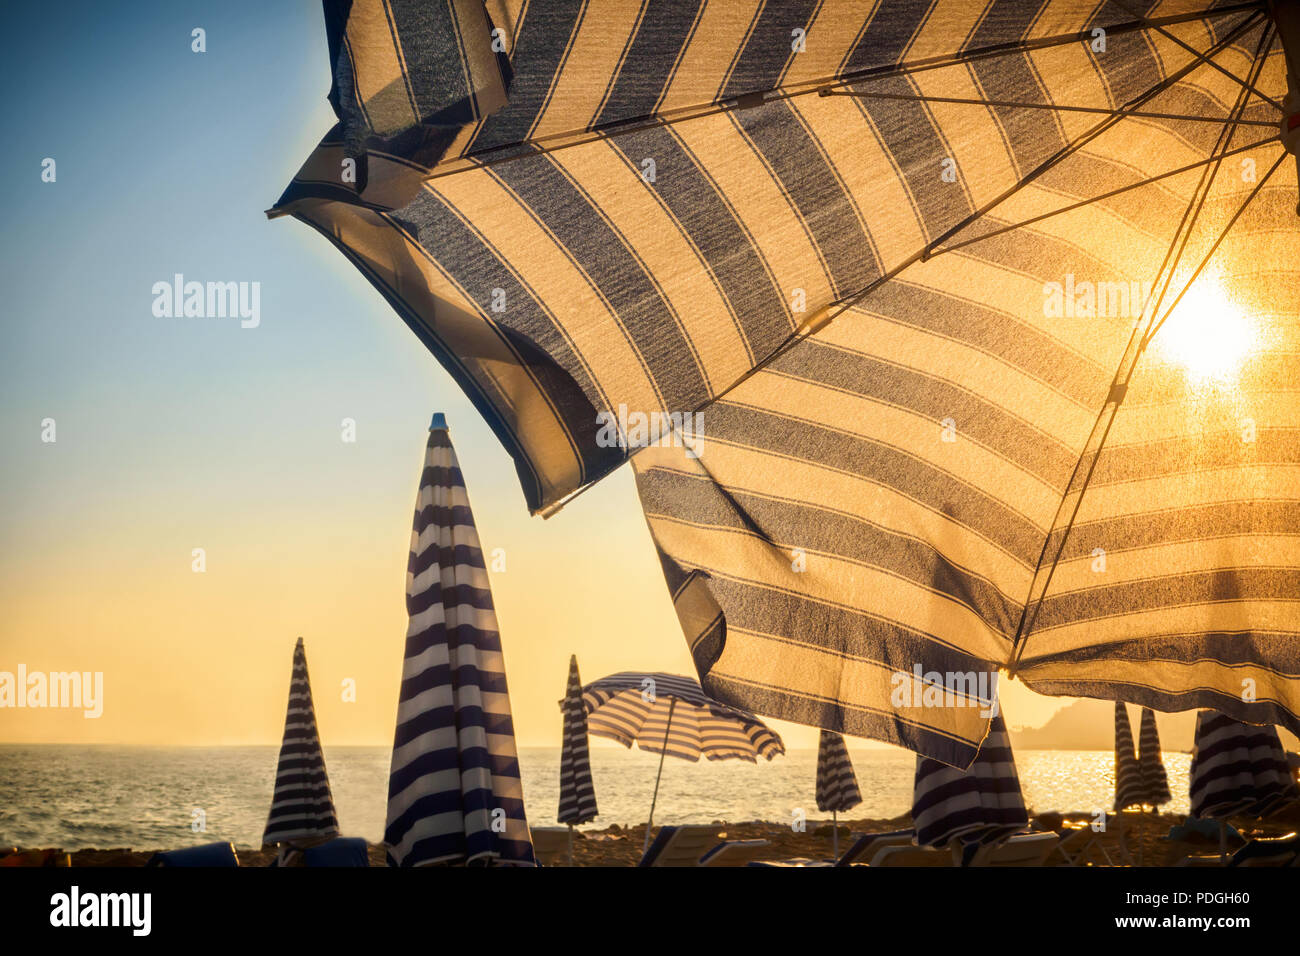 Sonnenschirm und Sonne vor bei Sonnenuntergang auf sandigen Strand der Stadt am Meer Ozean Konzept der Tourismus reisen und Körper Haut Schutz von Melanom der Haut cance Stockfoto